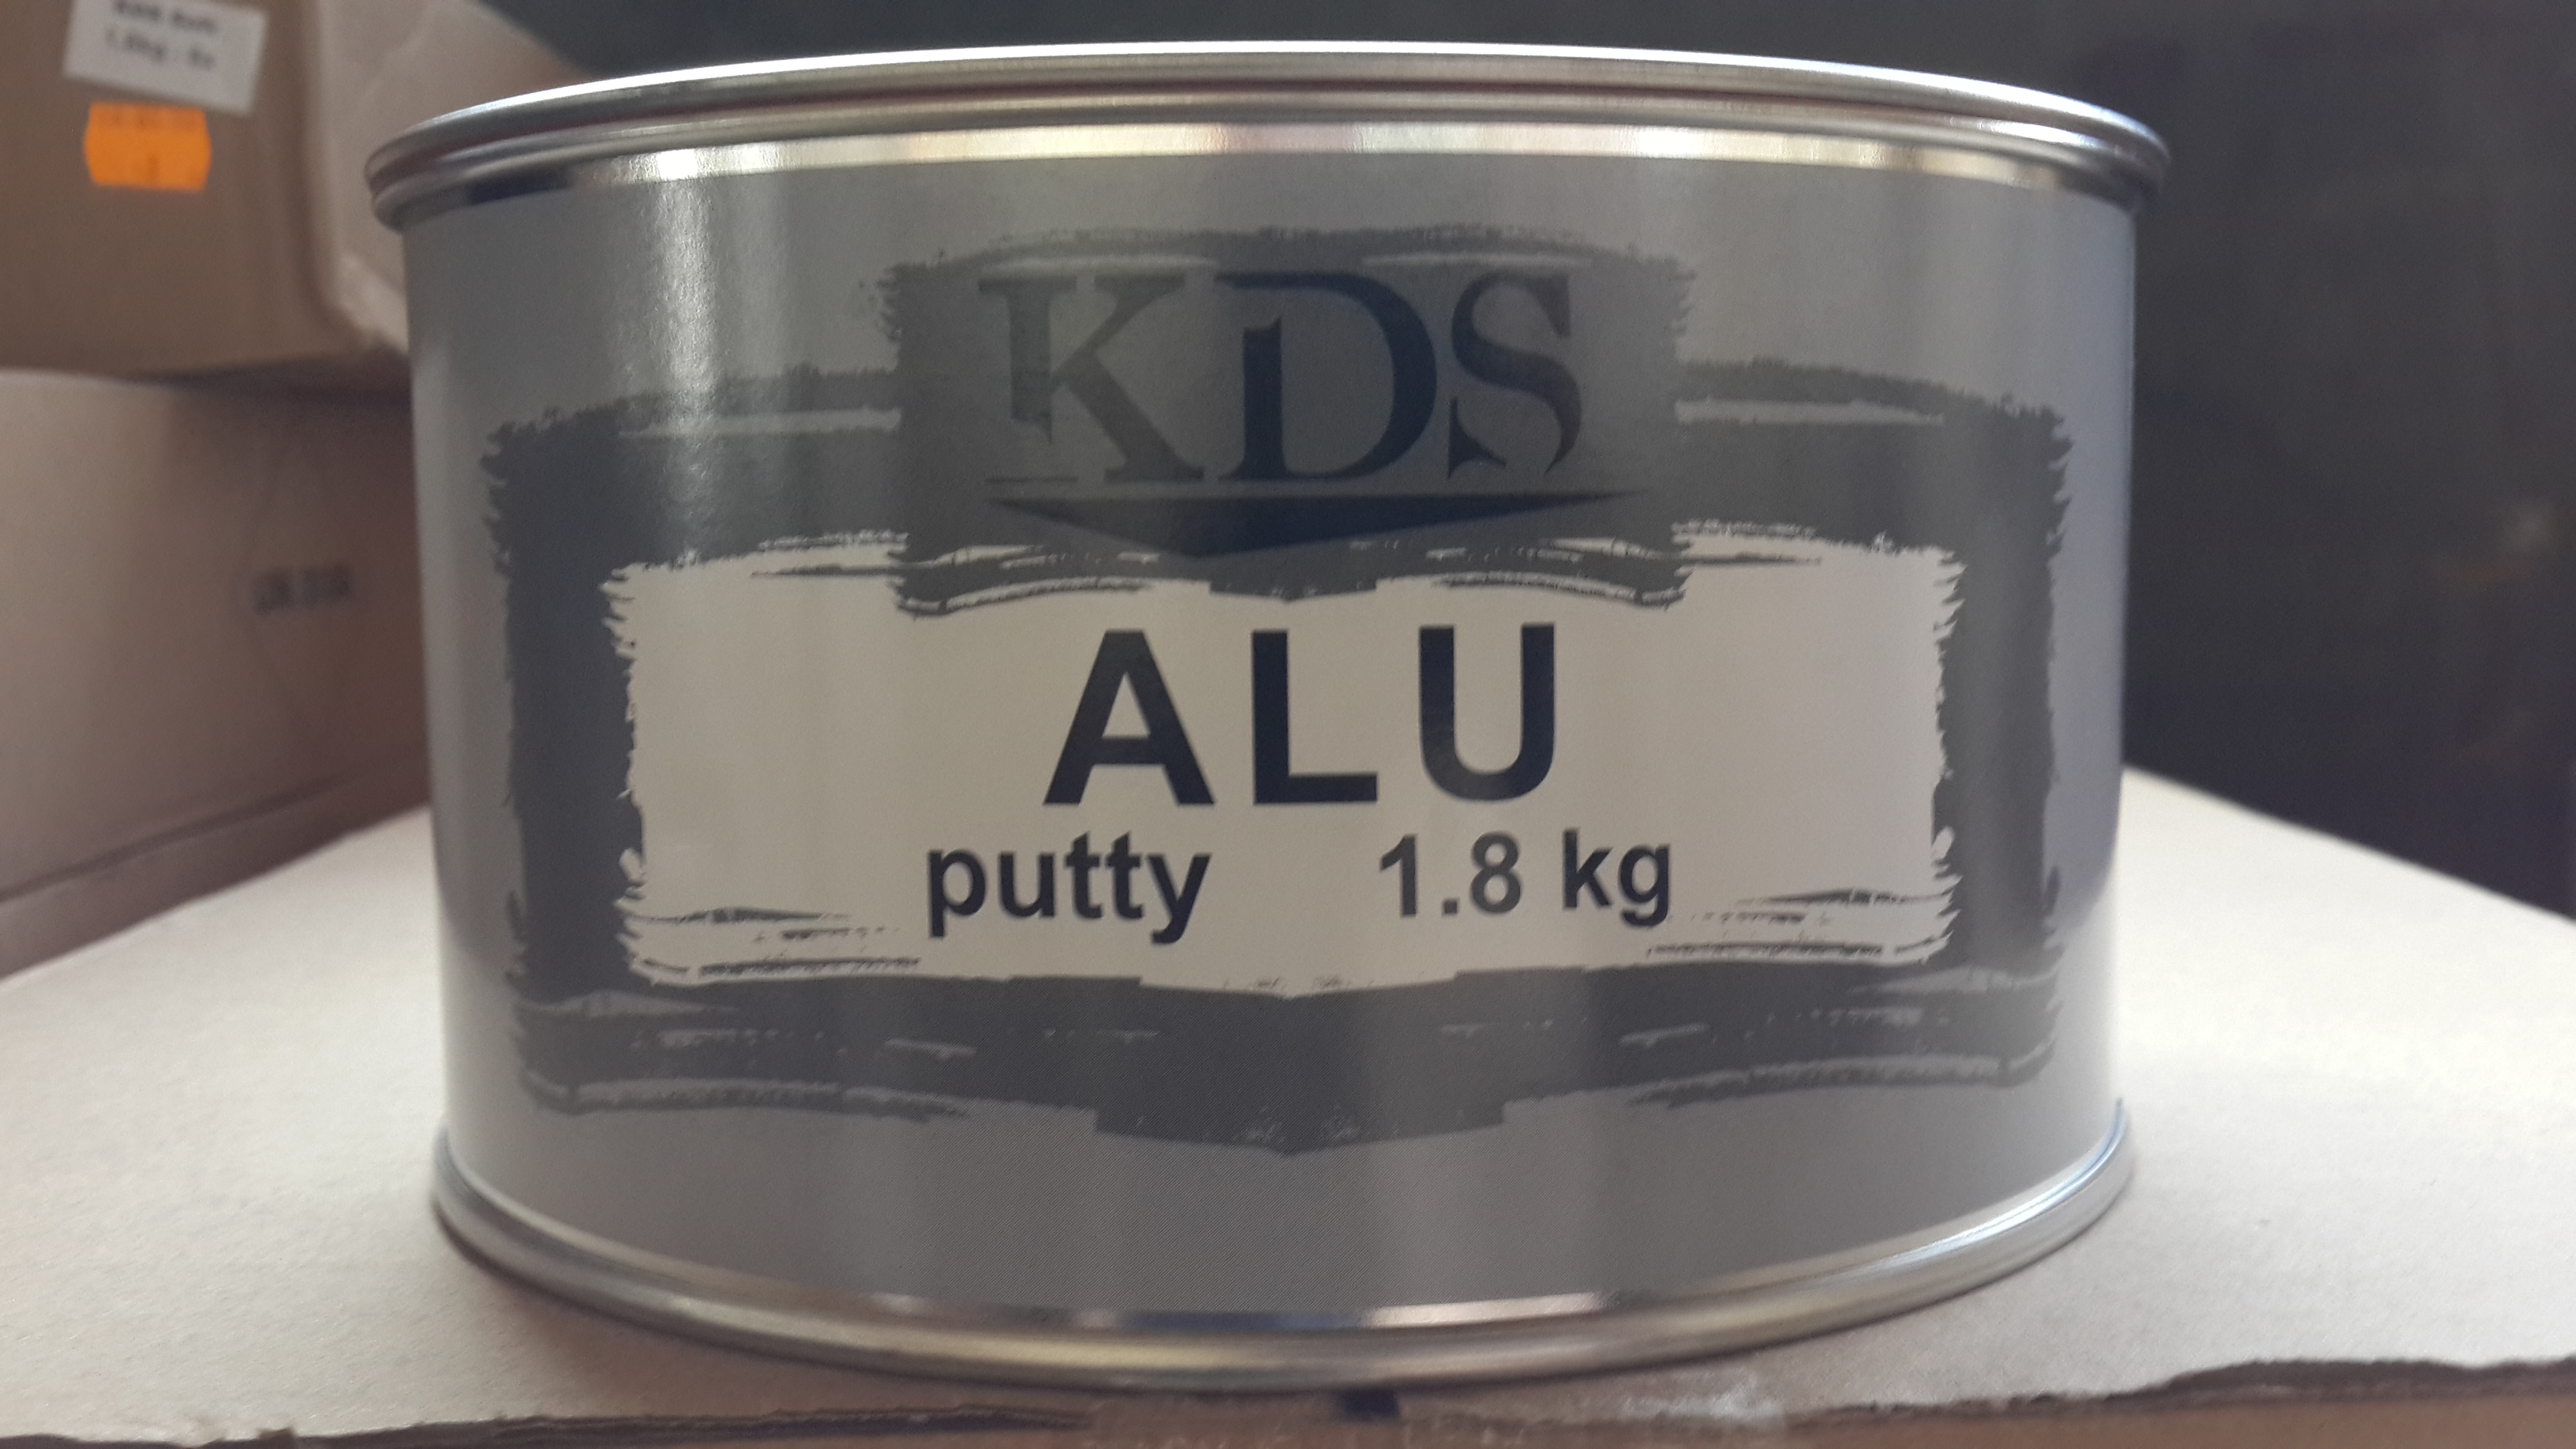 kds alu,putty kds alu,шпаклёвка алюминевая КДС,kds lutsk,материалы для кузовного ремонта,материалы для малярки,материалы для подготовки